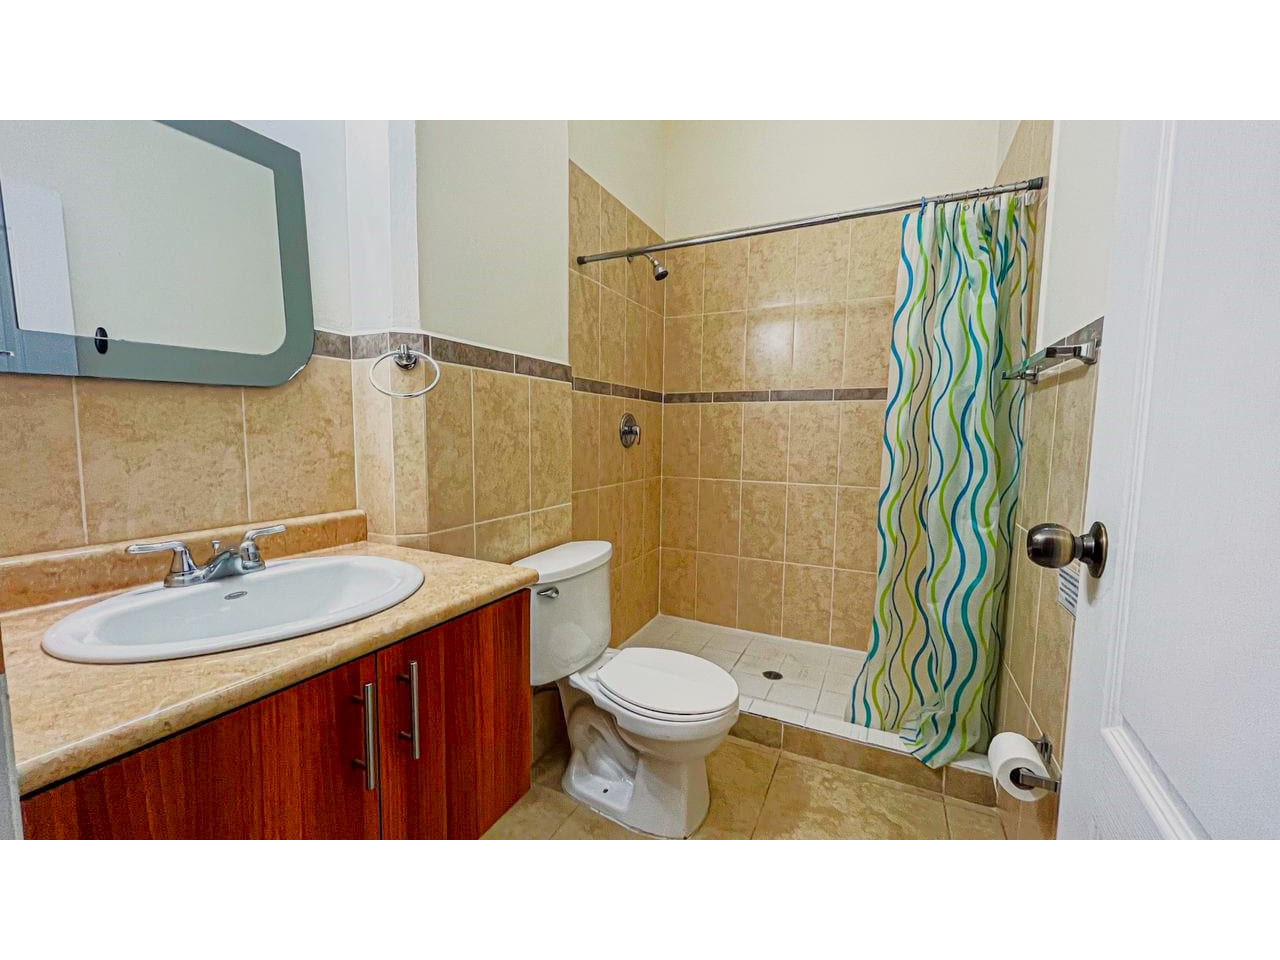 Baño con paredes de color blanco, suelo de cerámica, regadera de cerámica con cortina de protección, baño y lavamanos de color blanco, con pequeño espejo.